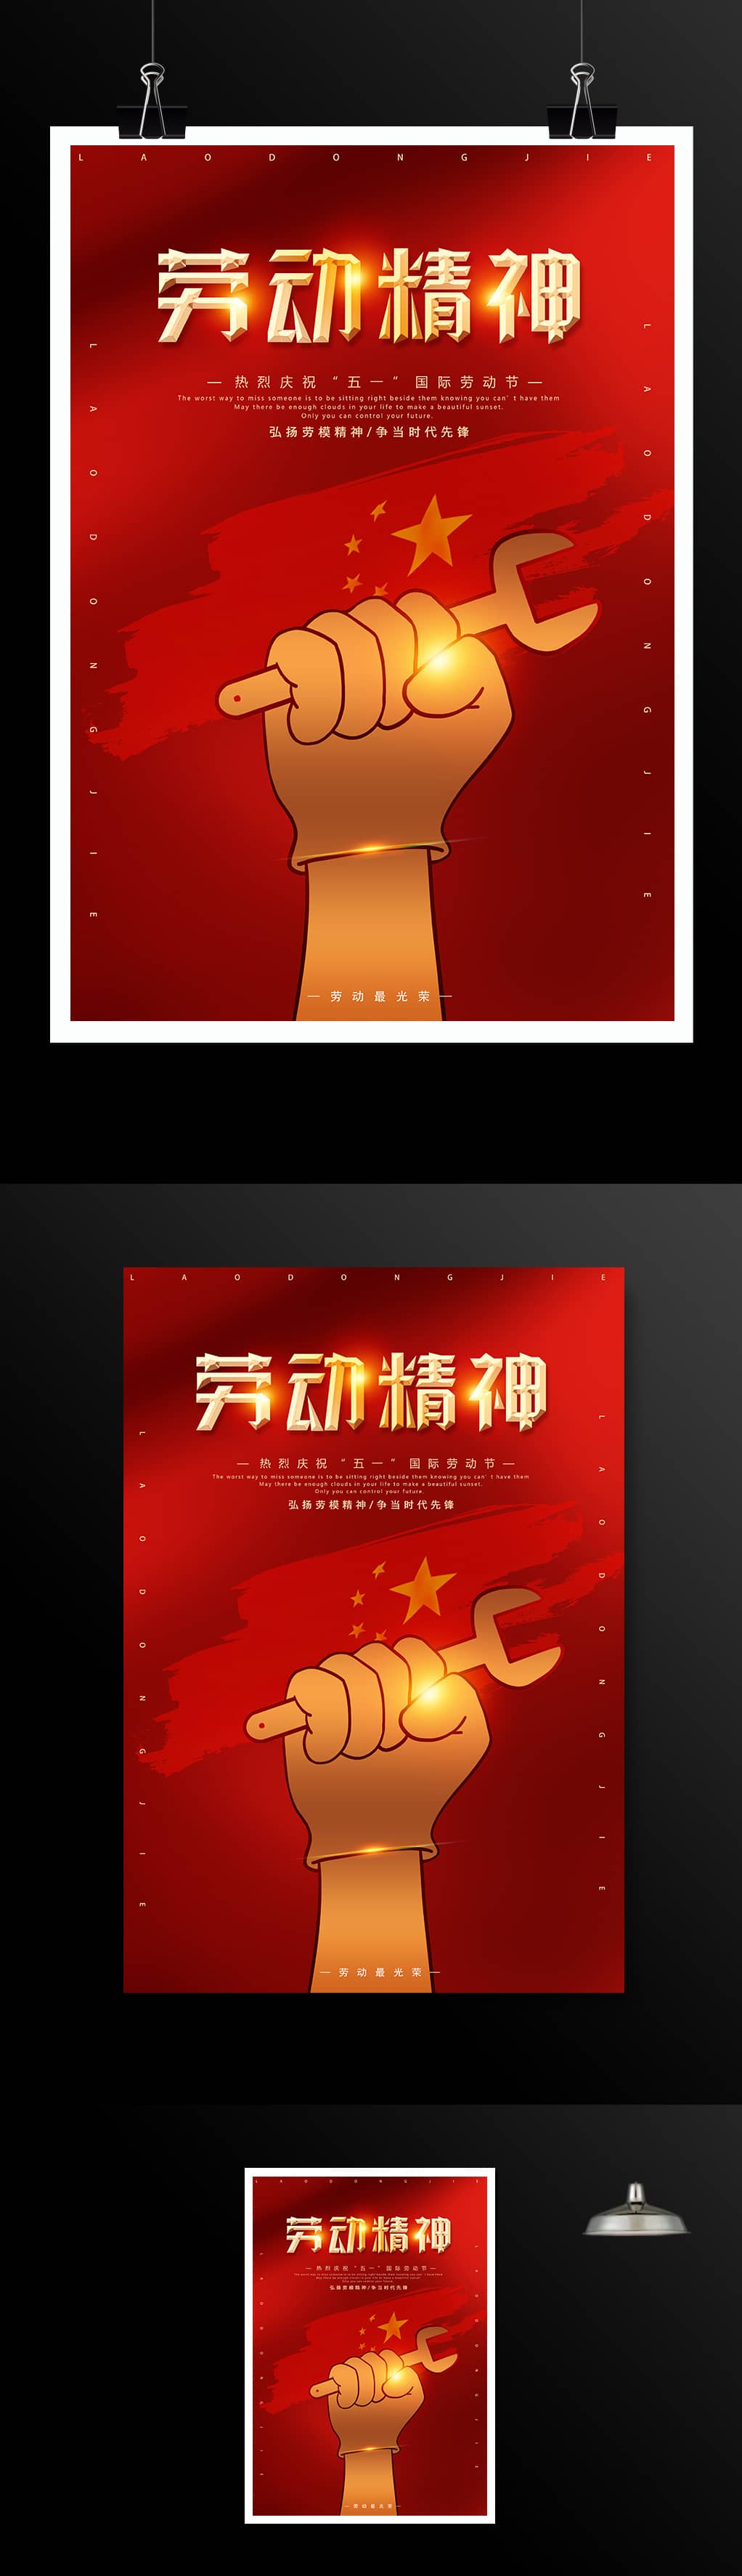 红色喜庆五一国际劳动节海报模板